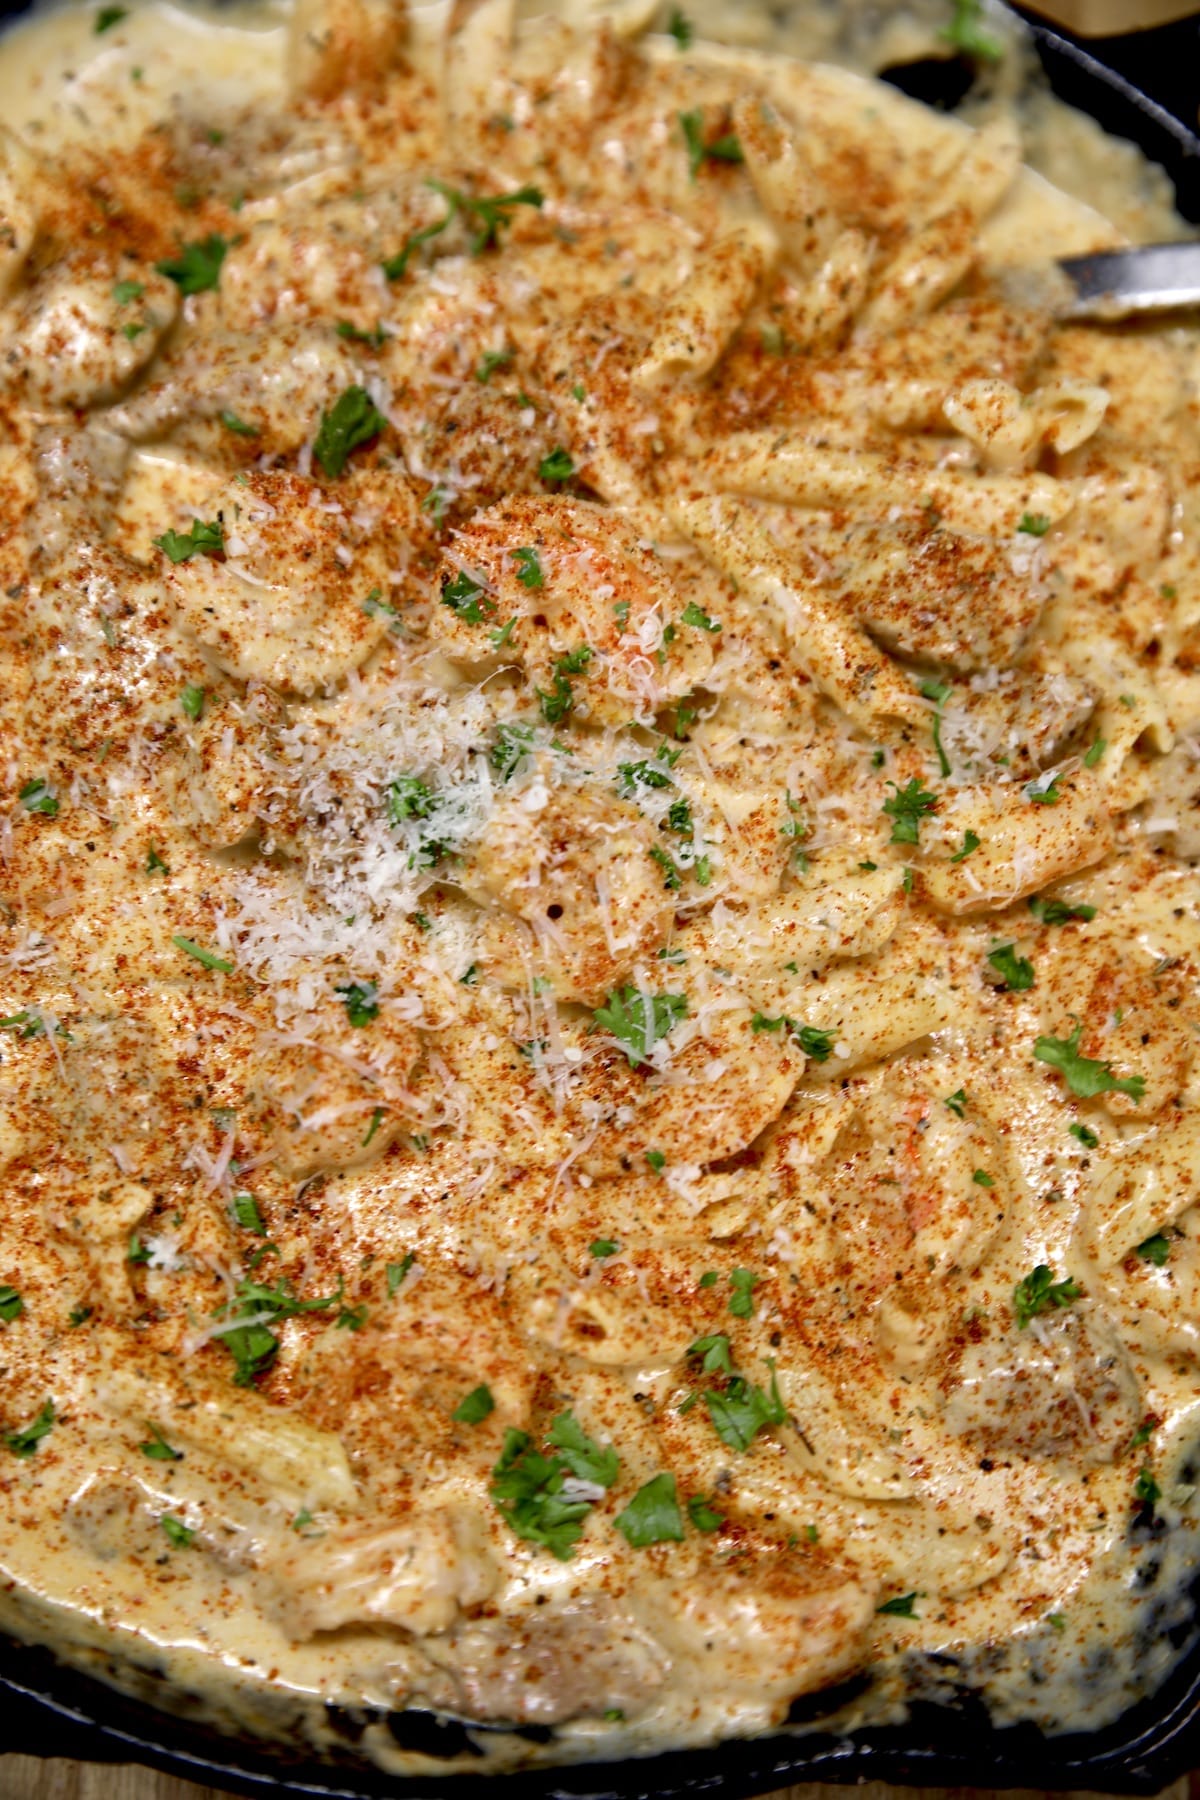 Skillet of steak and shrimp pasta.